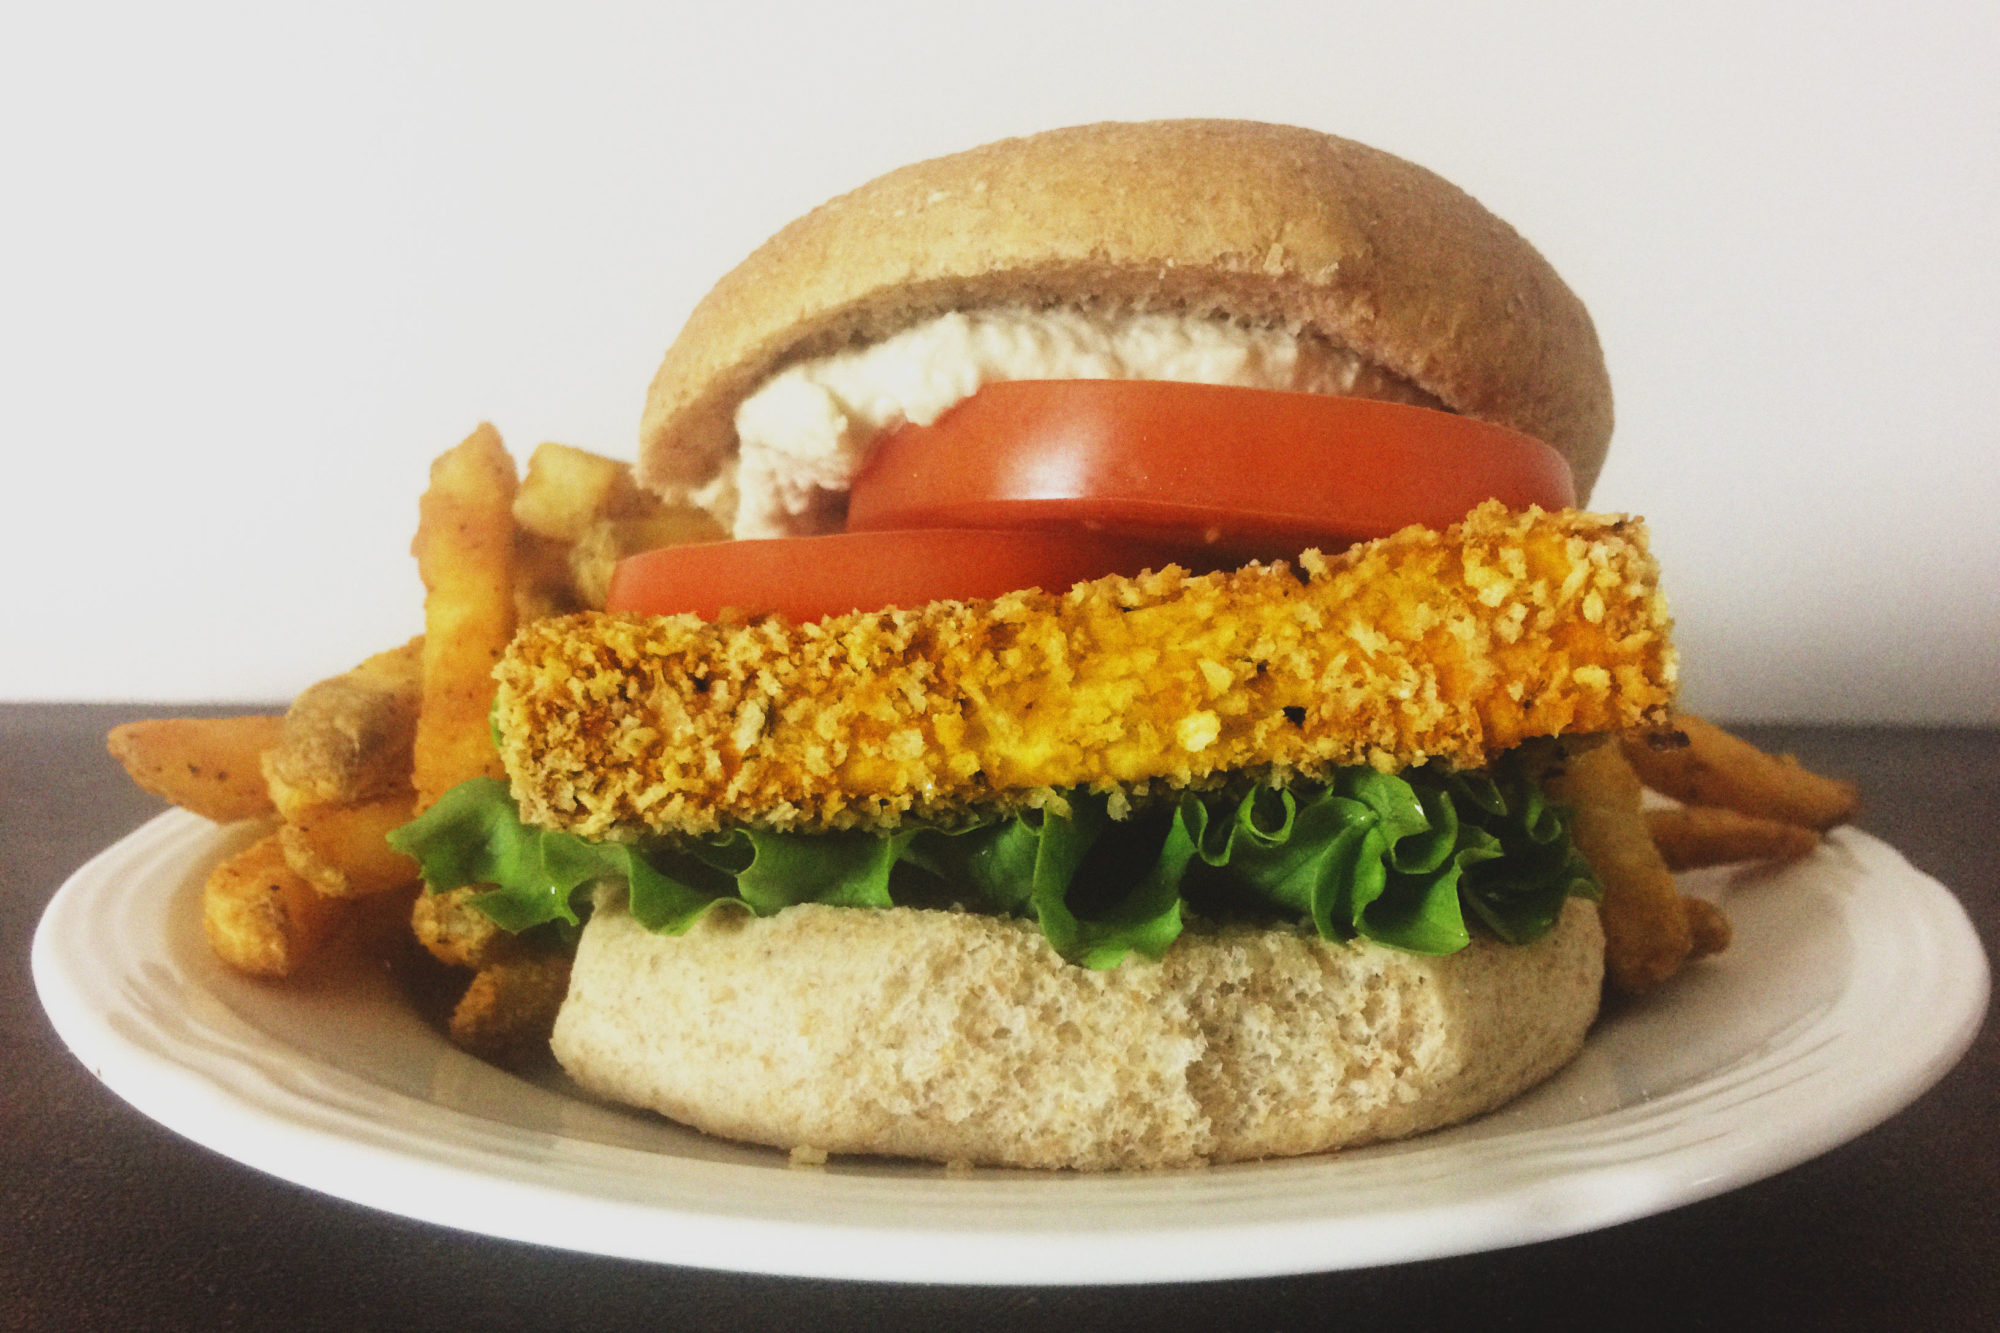 Healthy Fast Food Style Crispy “Chicken” Sandwich